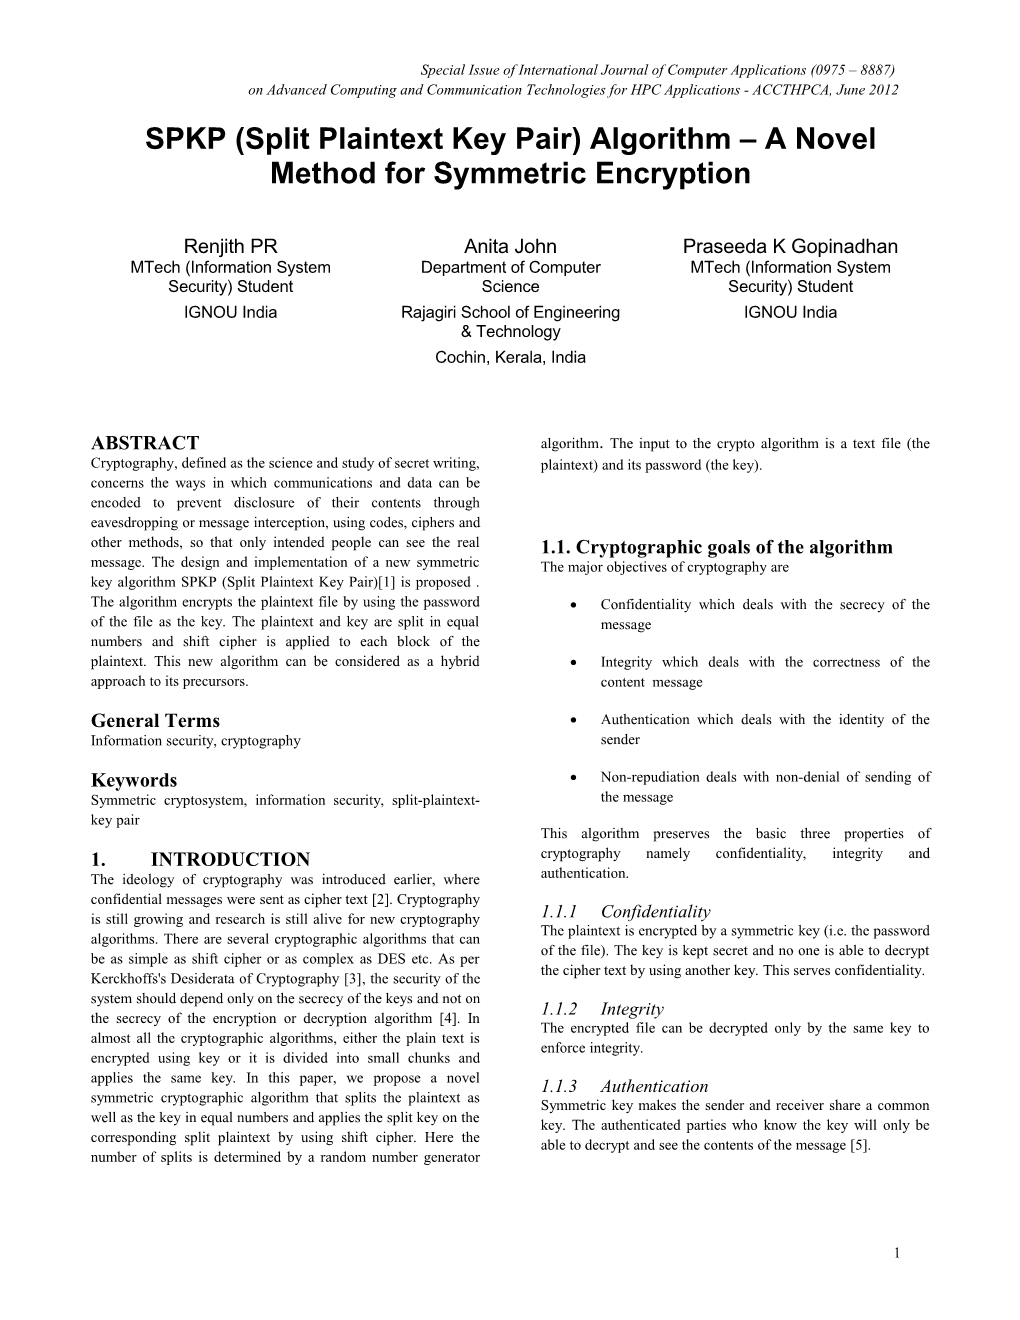 SPKP (Split Plaintext Key Pair) Algorithm a Novel Method for Symmetric Encryption